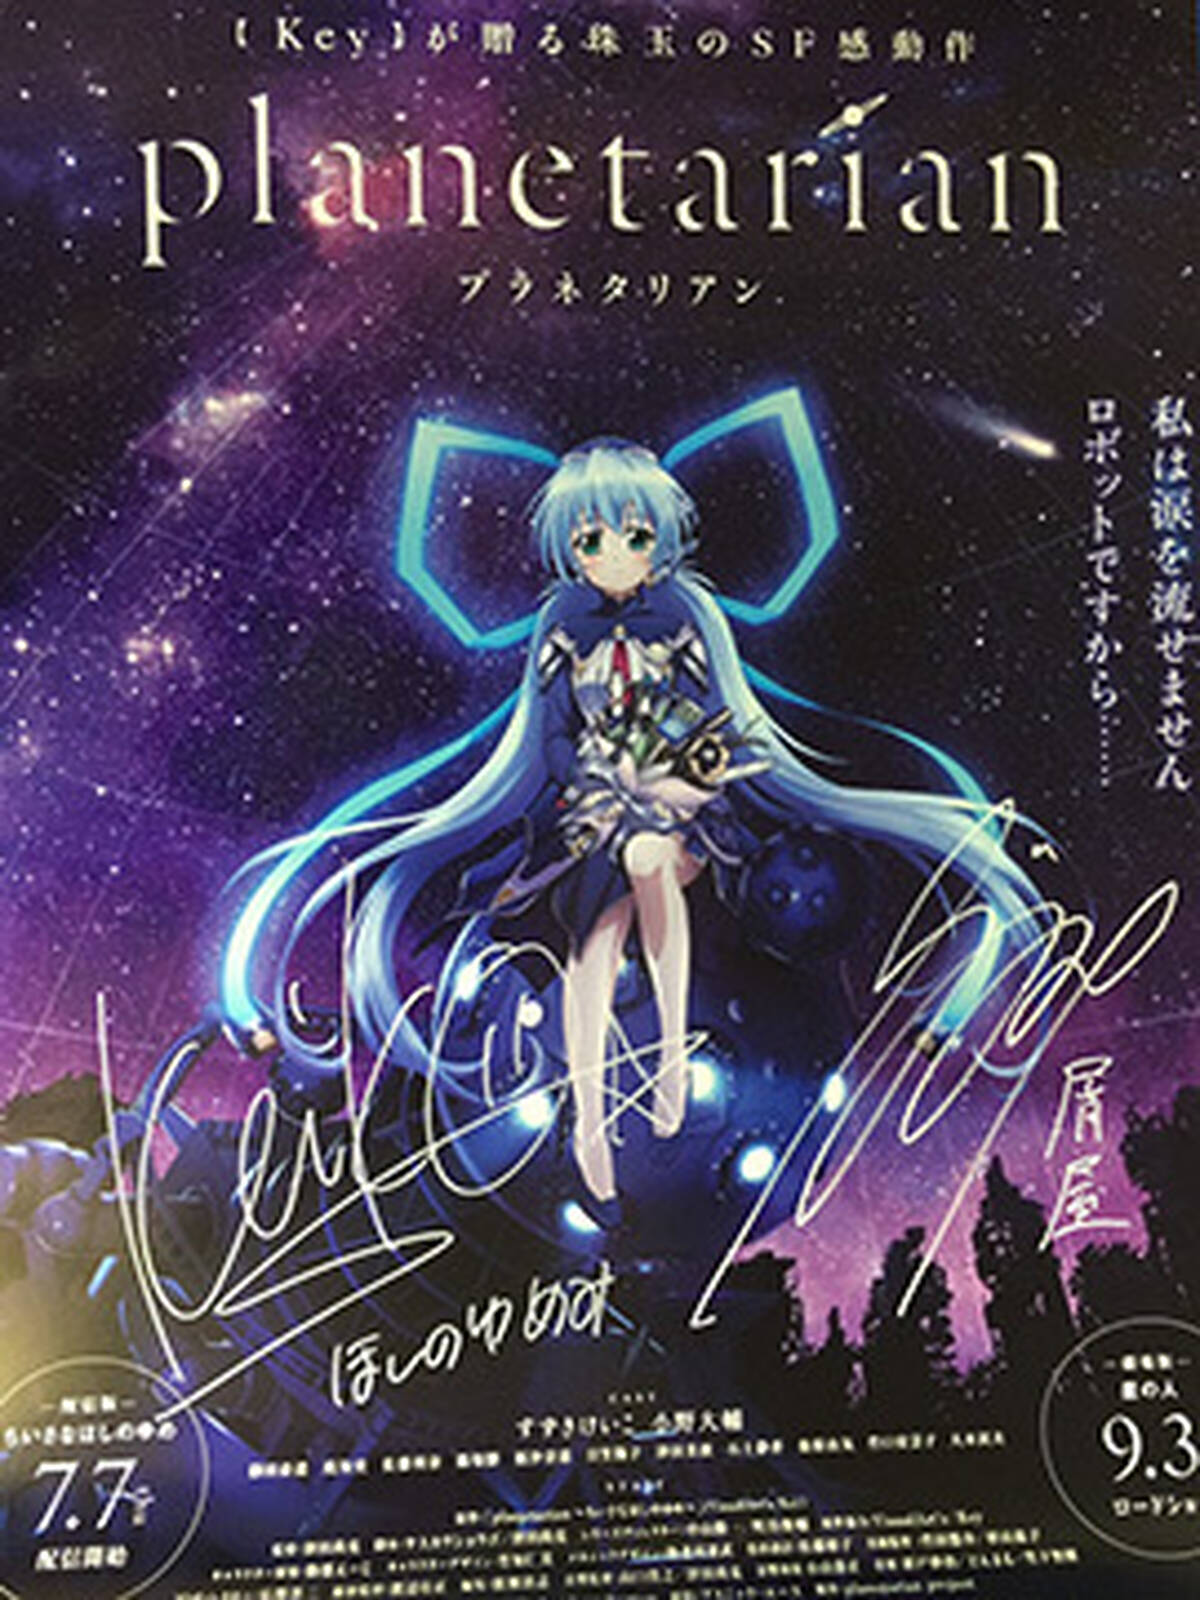 レビューを書いて応募 Planetarian すずきけいこ 小野大輔サイン入り特製ポスターを1名様にプレゼント アキバ総研